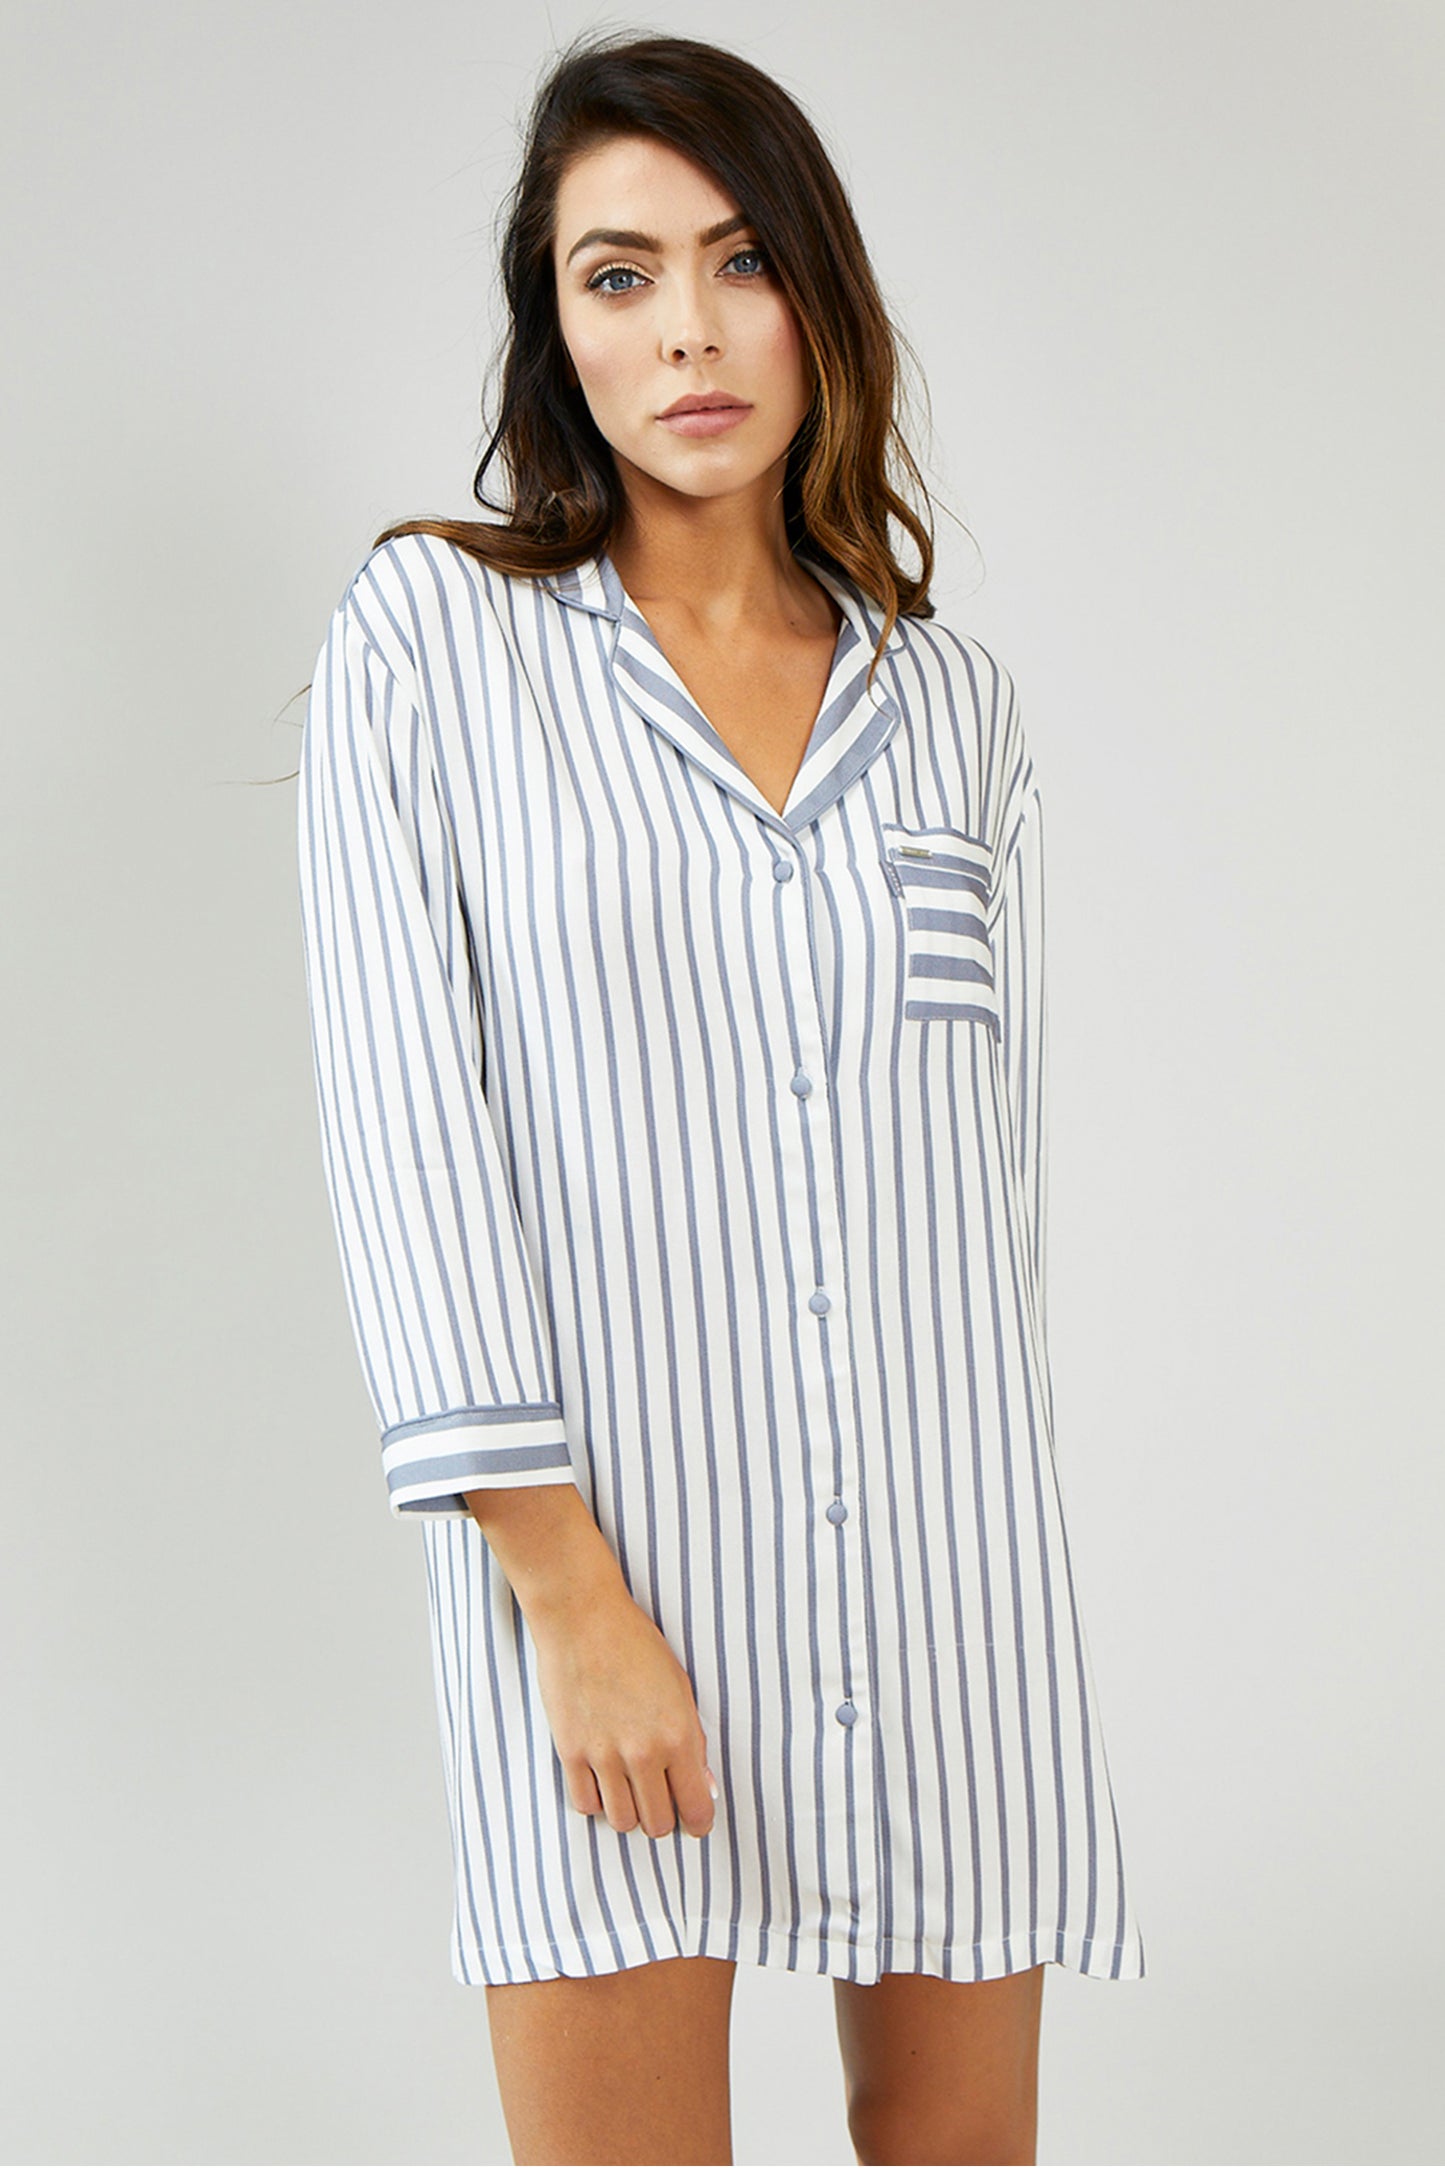 
                  
                    Nightwear Womens Stripe Nightshirt - Grey/Ecru from Pretty You London
                  
                